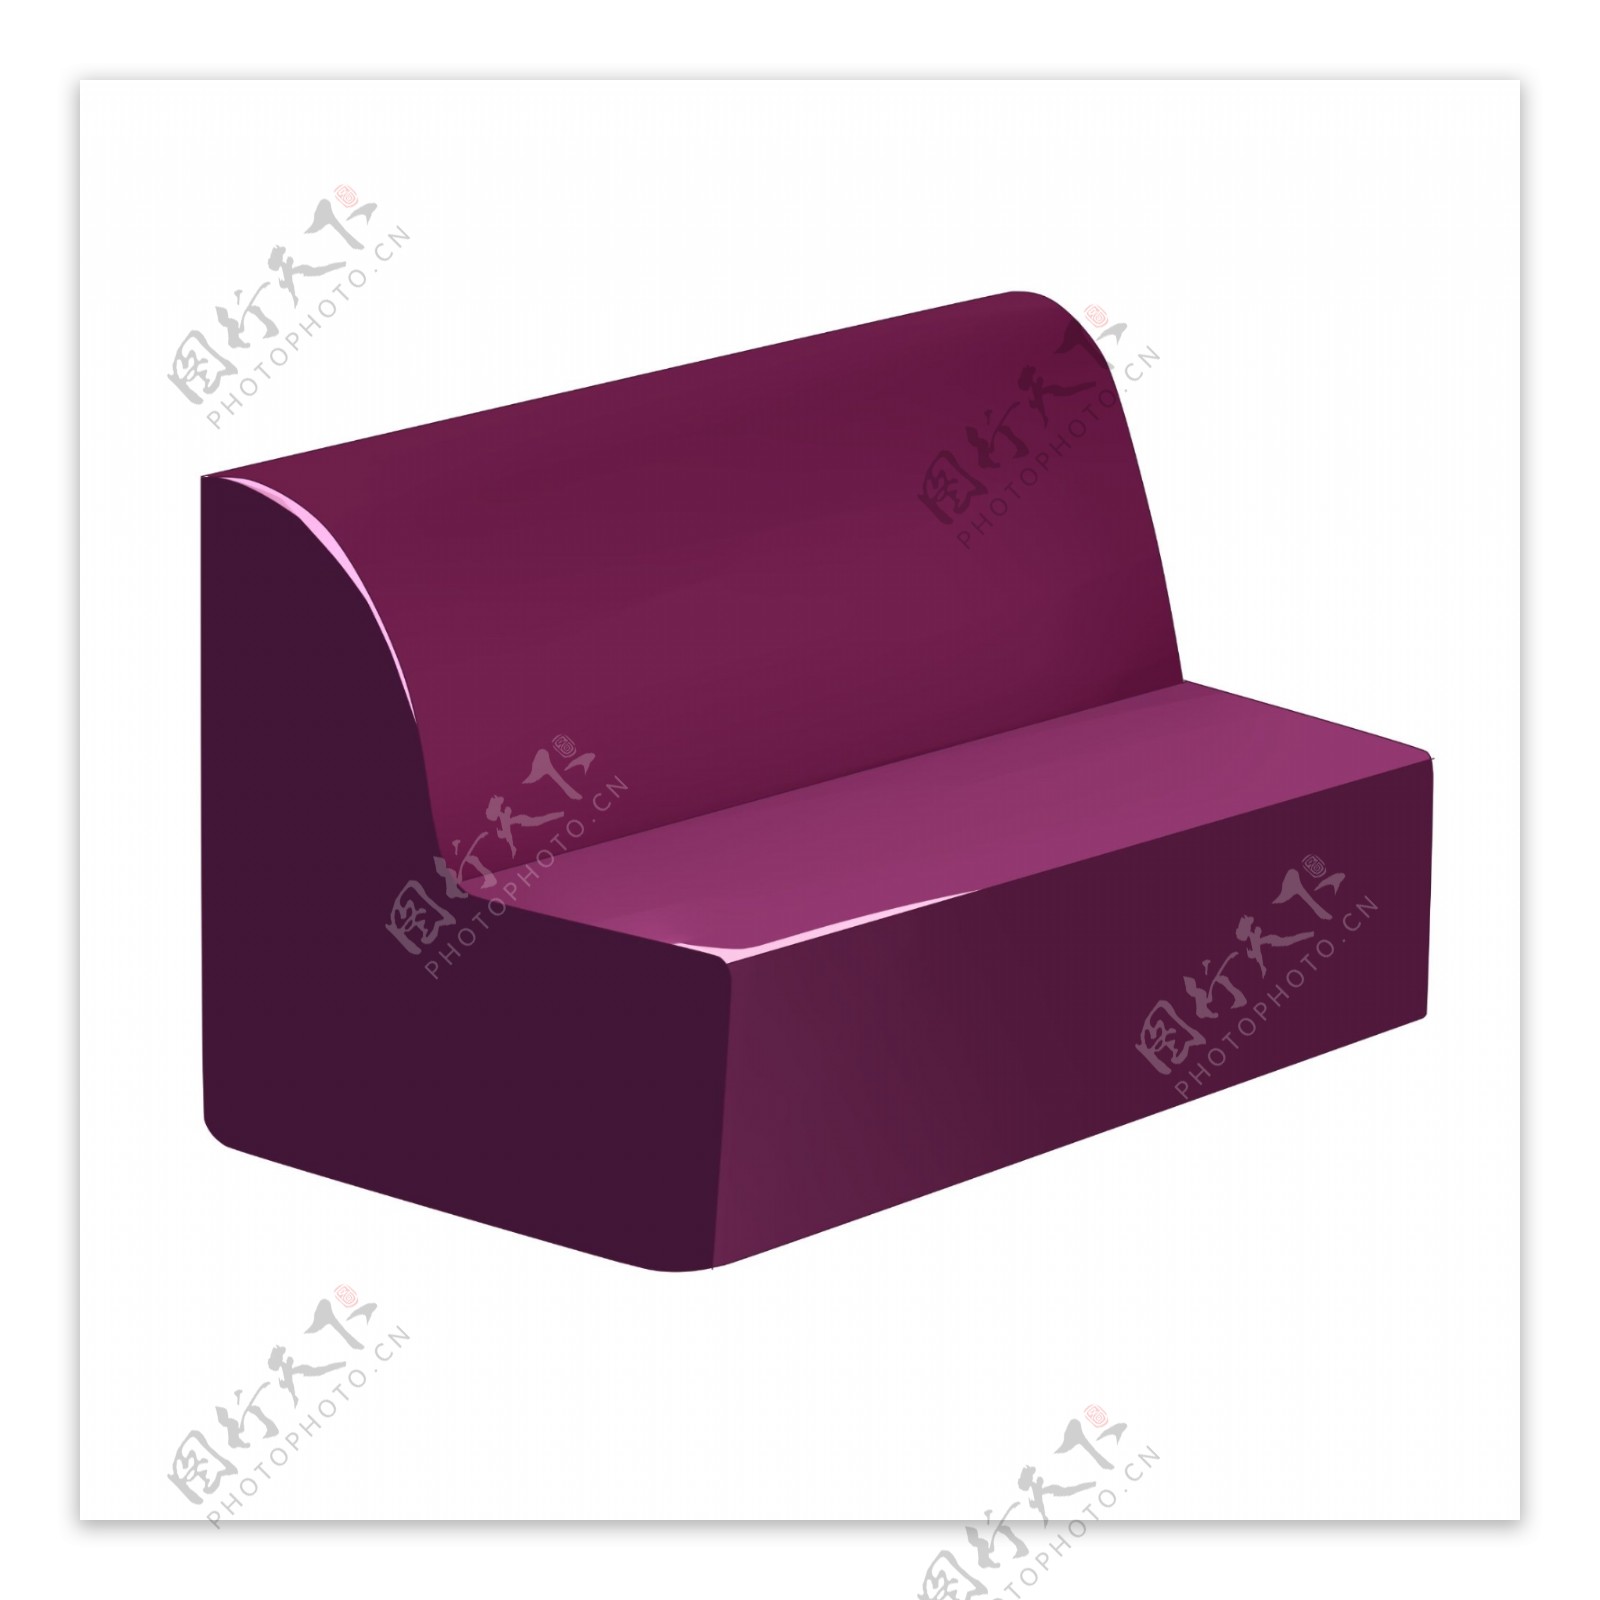 软包的紫色椅子插画